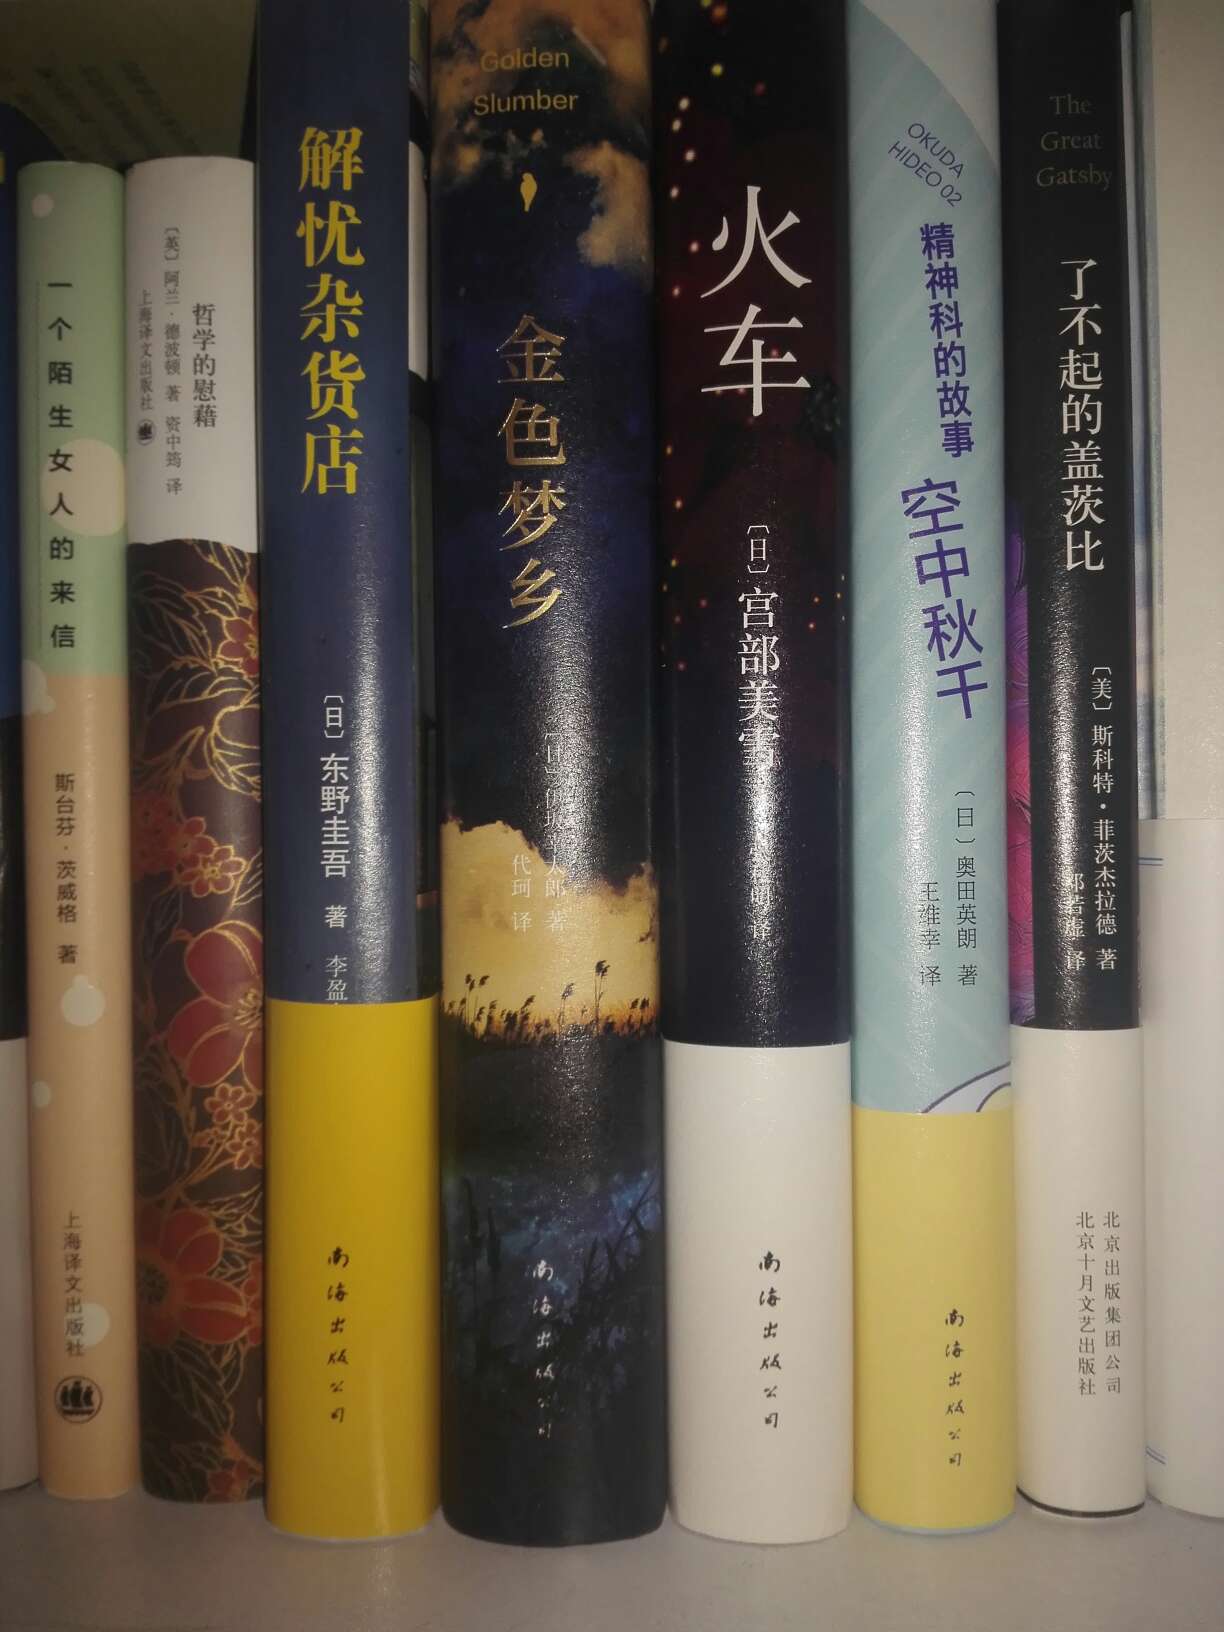 在网上看到这本书是“当代日本四大小说杰作”之一，便买来看看，到底是否称得上是杰作。送货快，包装尚可，书里还夹着张圆纸片。